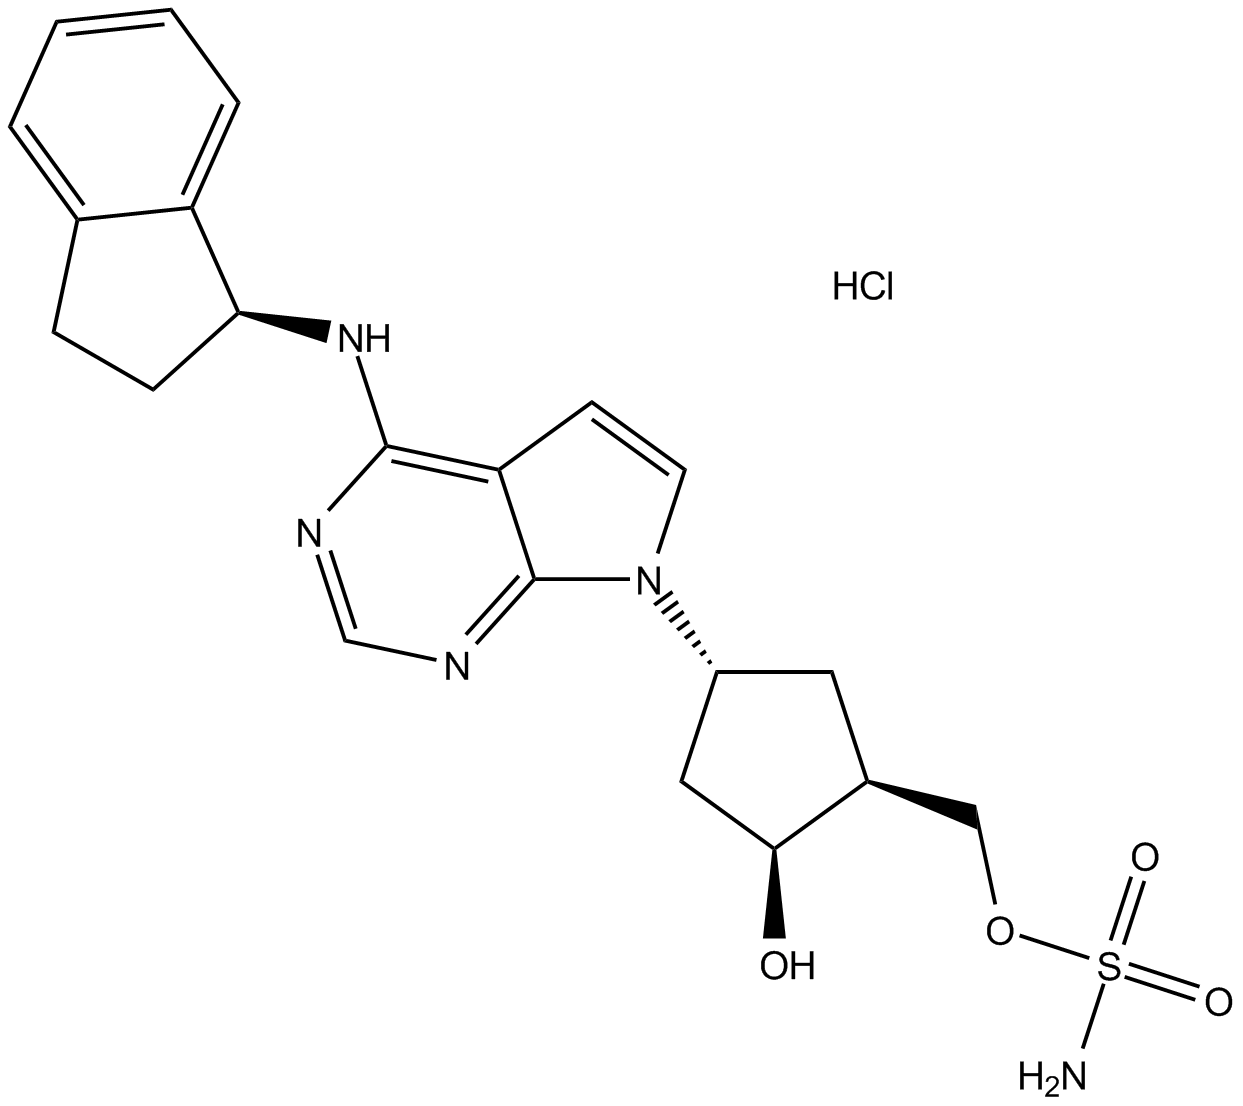 MLN4924 HCl salt 化学構造